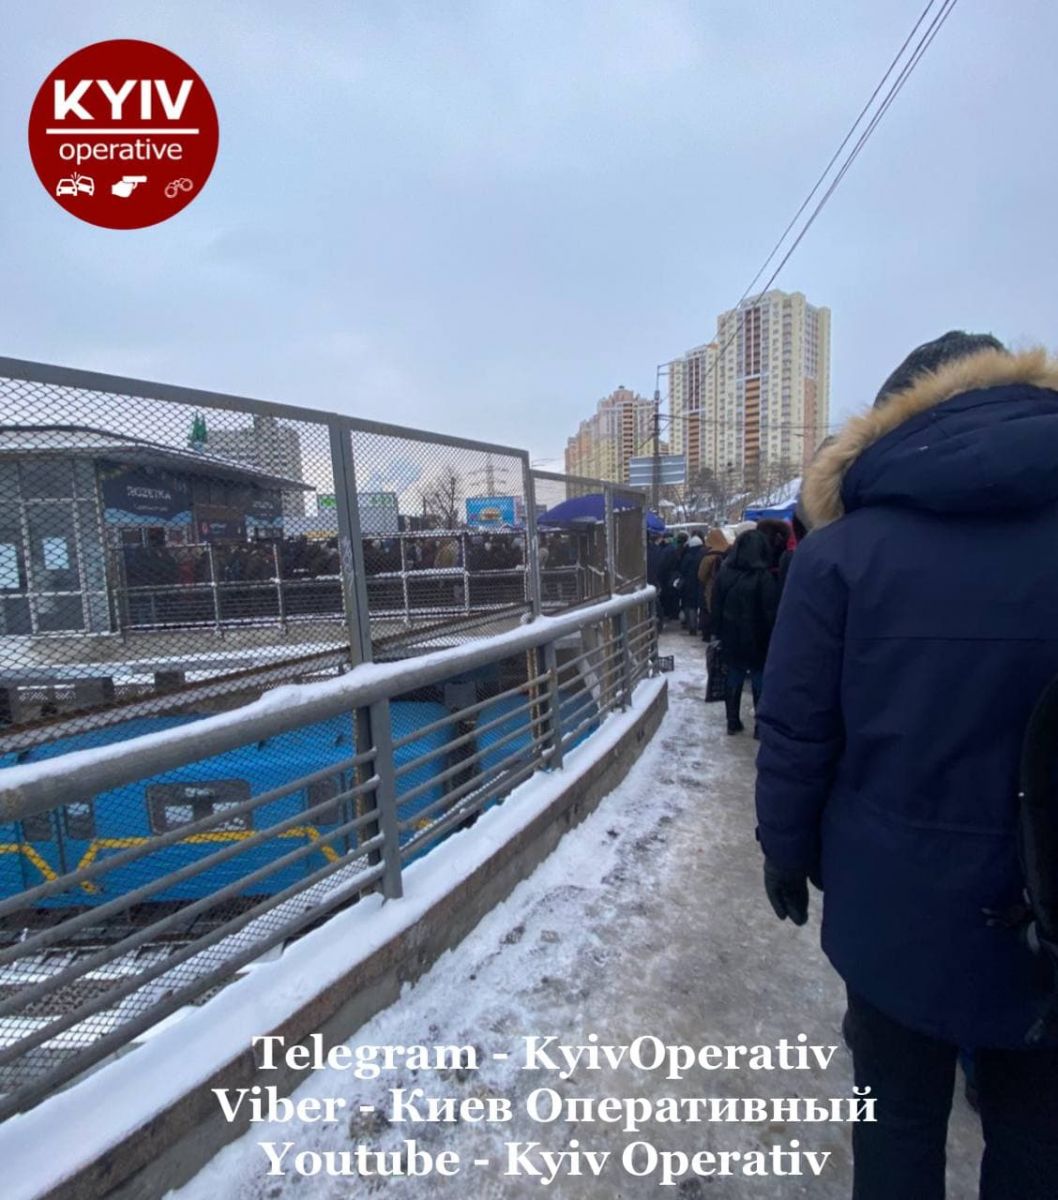 Вхід до станції метро "Чернігівська"